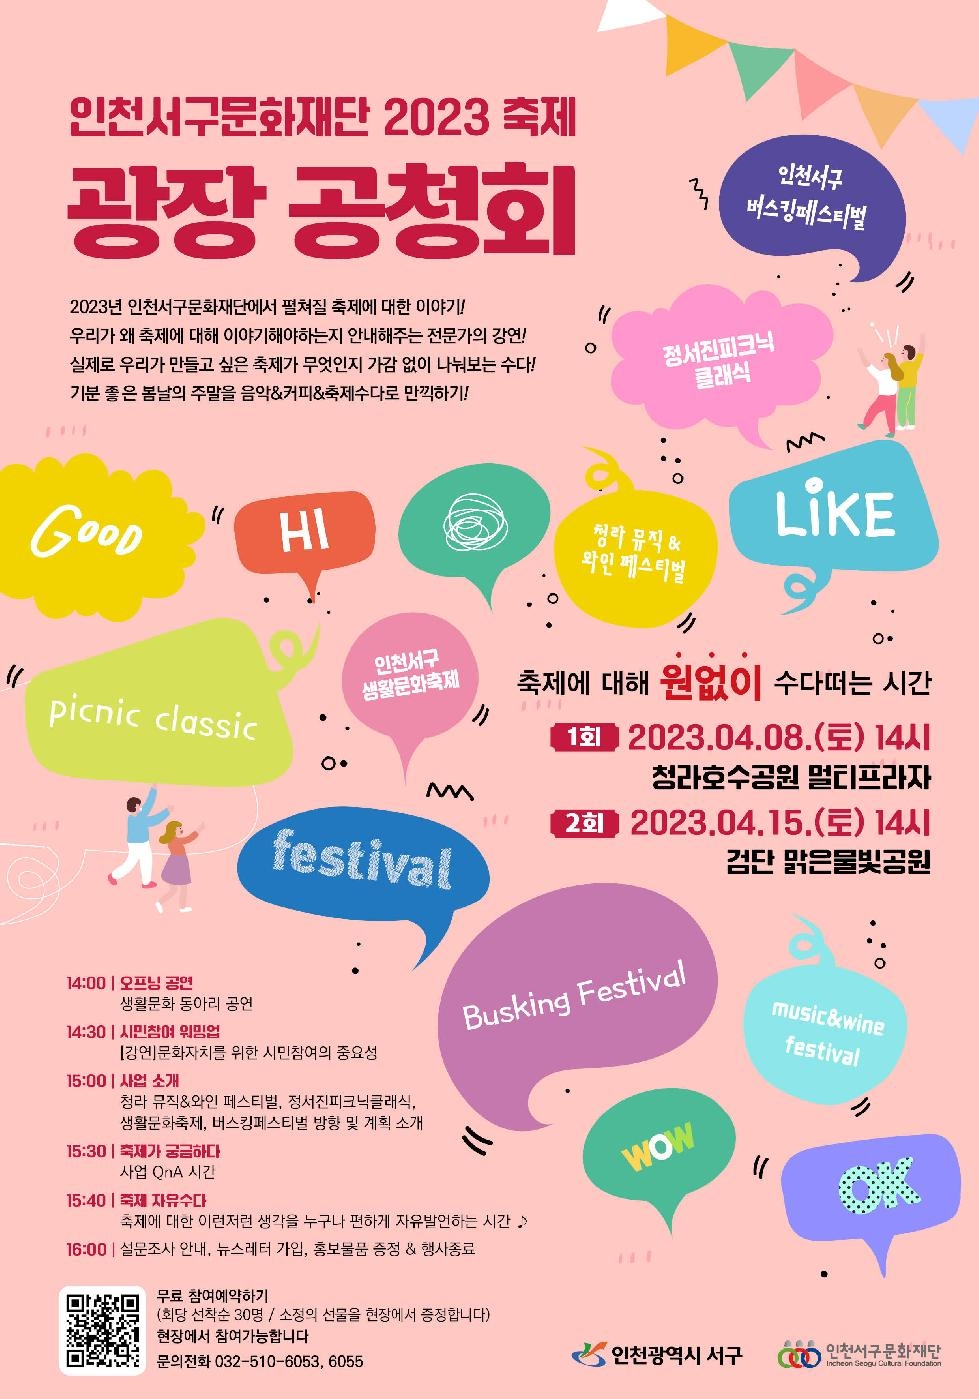 인천 서구문화재단, 주민과 함께 올해 열릴 축제 논의할 ‘광장 공청회’ 개최